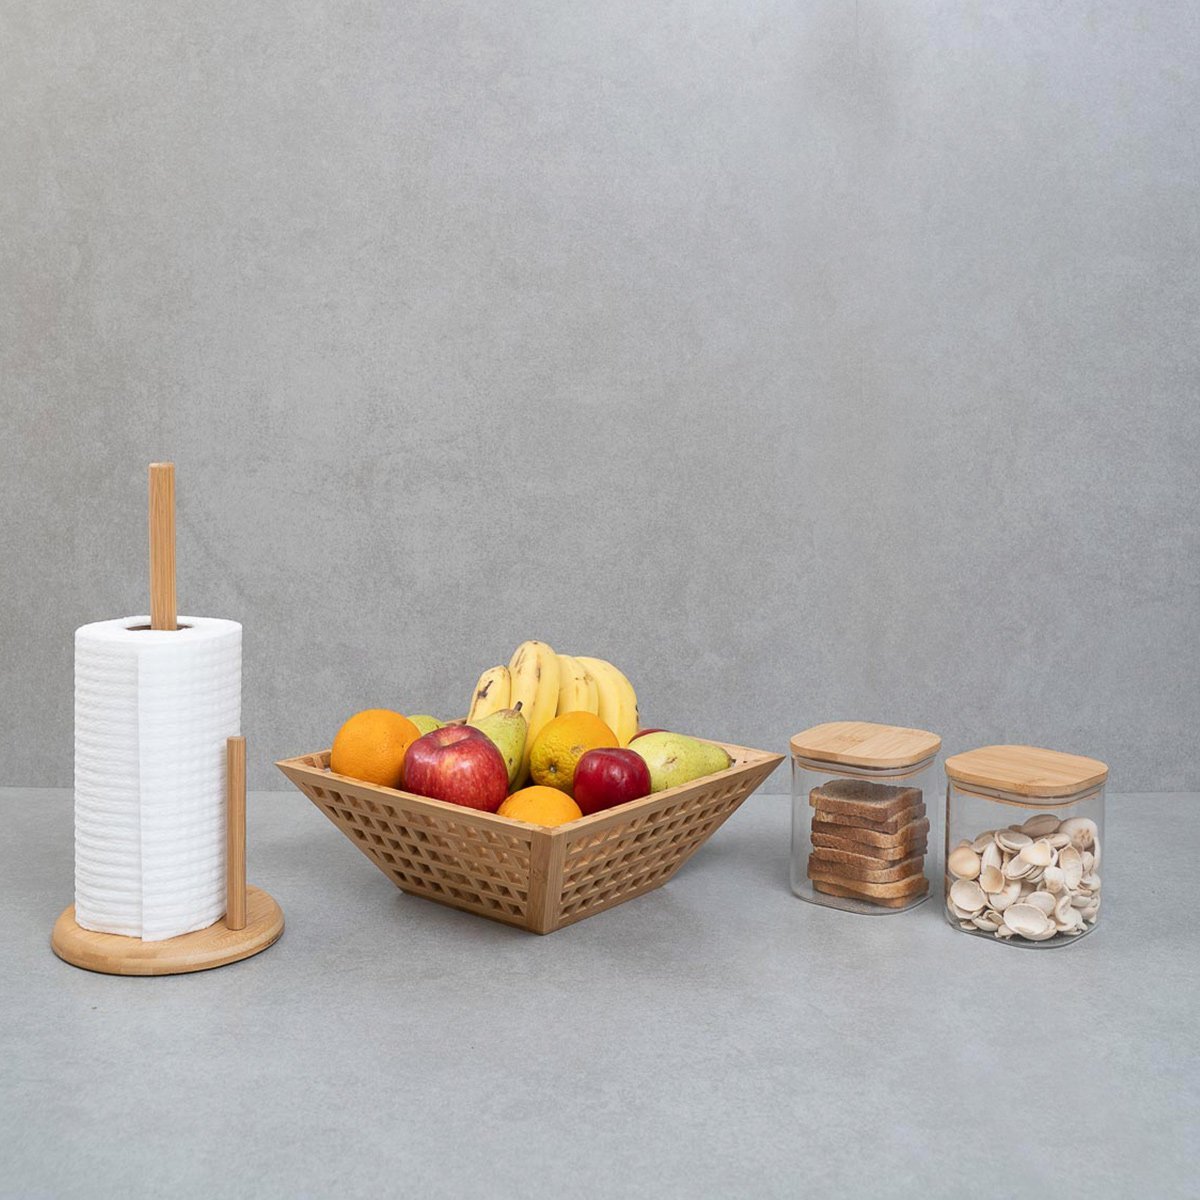 Kit com 2 potes de vidro com tampa de bambu 800ml, fruteira vazada de bambu e porta papel toalha de - 6